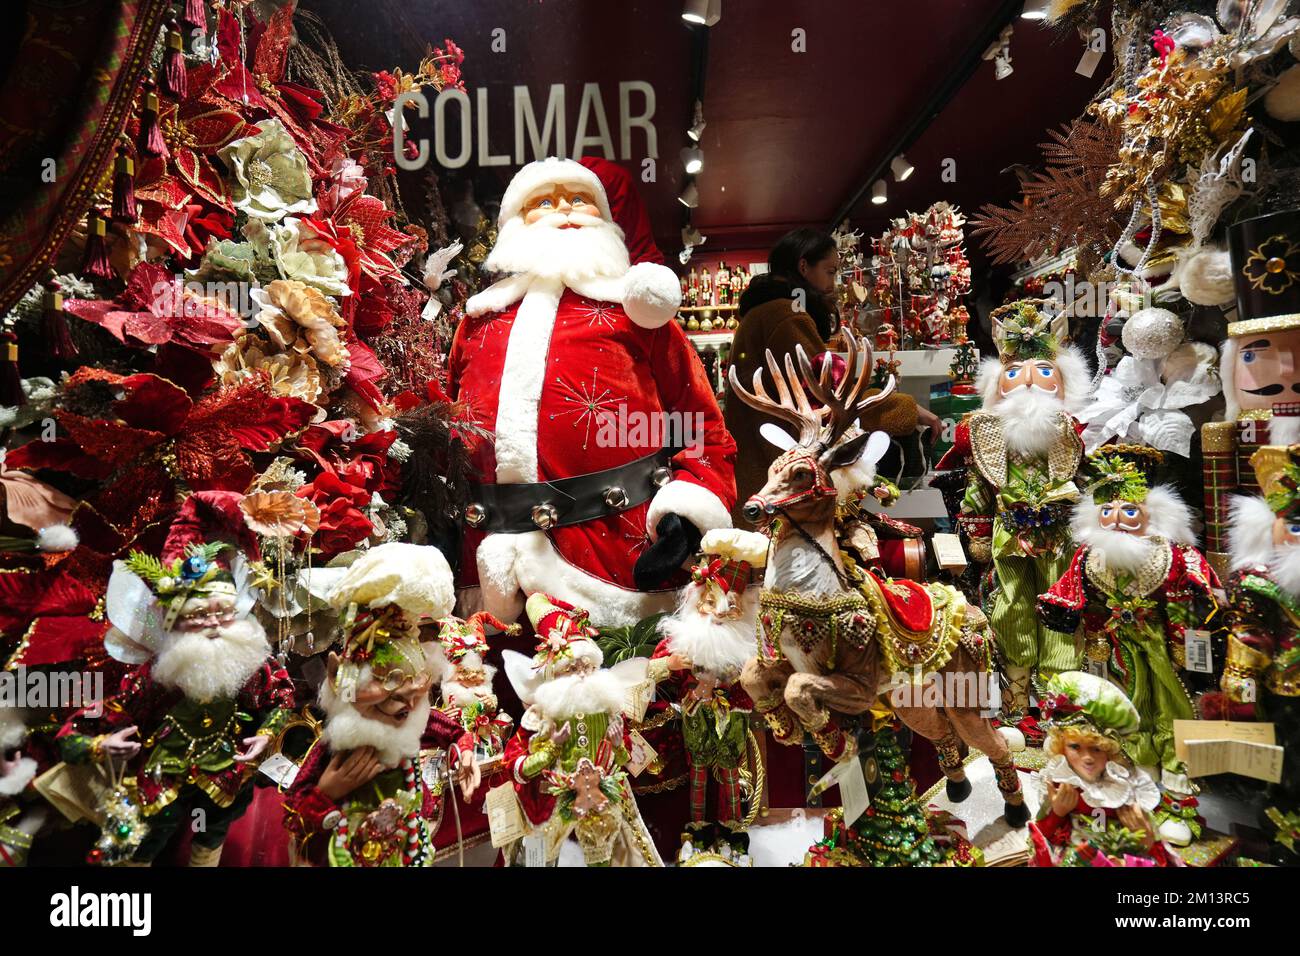 Decoración del mercado de Navidad como símbolo de las vacaciones de invierno y el Año Nuevo. Colmar. Alsacia. Francia. Foto de stock